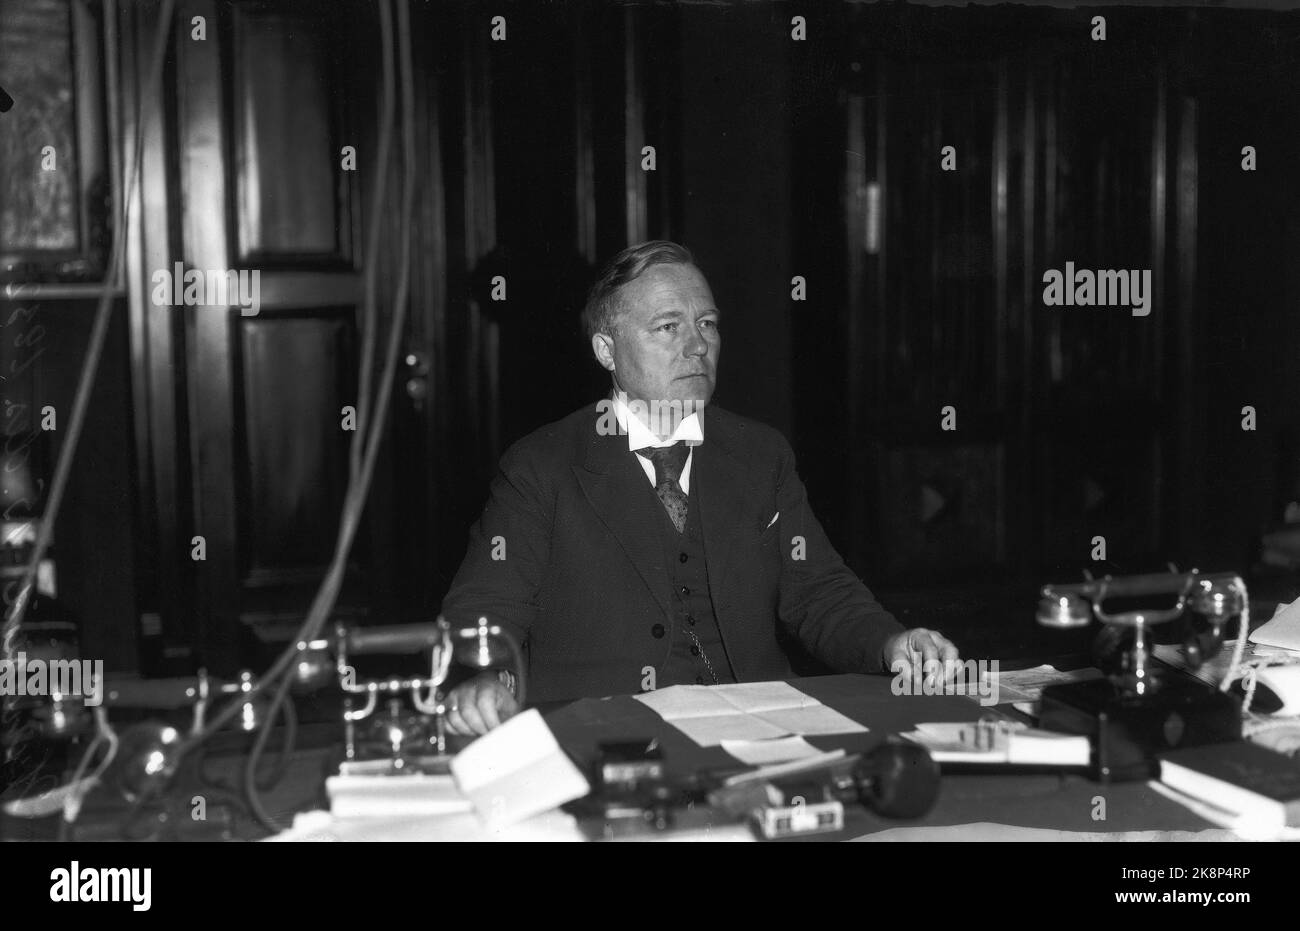 Oslo: Jens Hundseid (1883-1965) norwegischer Politiker, Premierminister vom 14. März 1932 bis zum 3. März 1933. Weiterer parlamentarischer Vertreter der Farmer Party von 1925 bis 1940. Hier wohl der Fotograf während der Premierministerzeit 1932-33) auf dem Desktop, der unter anderem. Nicht weniger als drei Telefone enthält. Foto: NTB Stockfoto